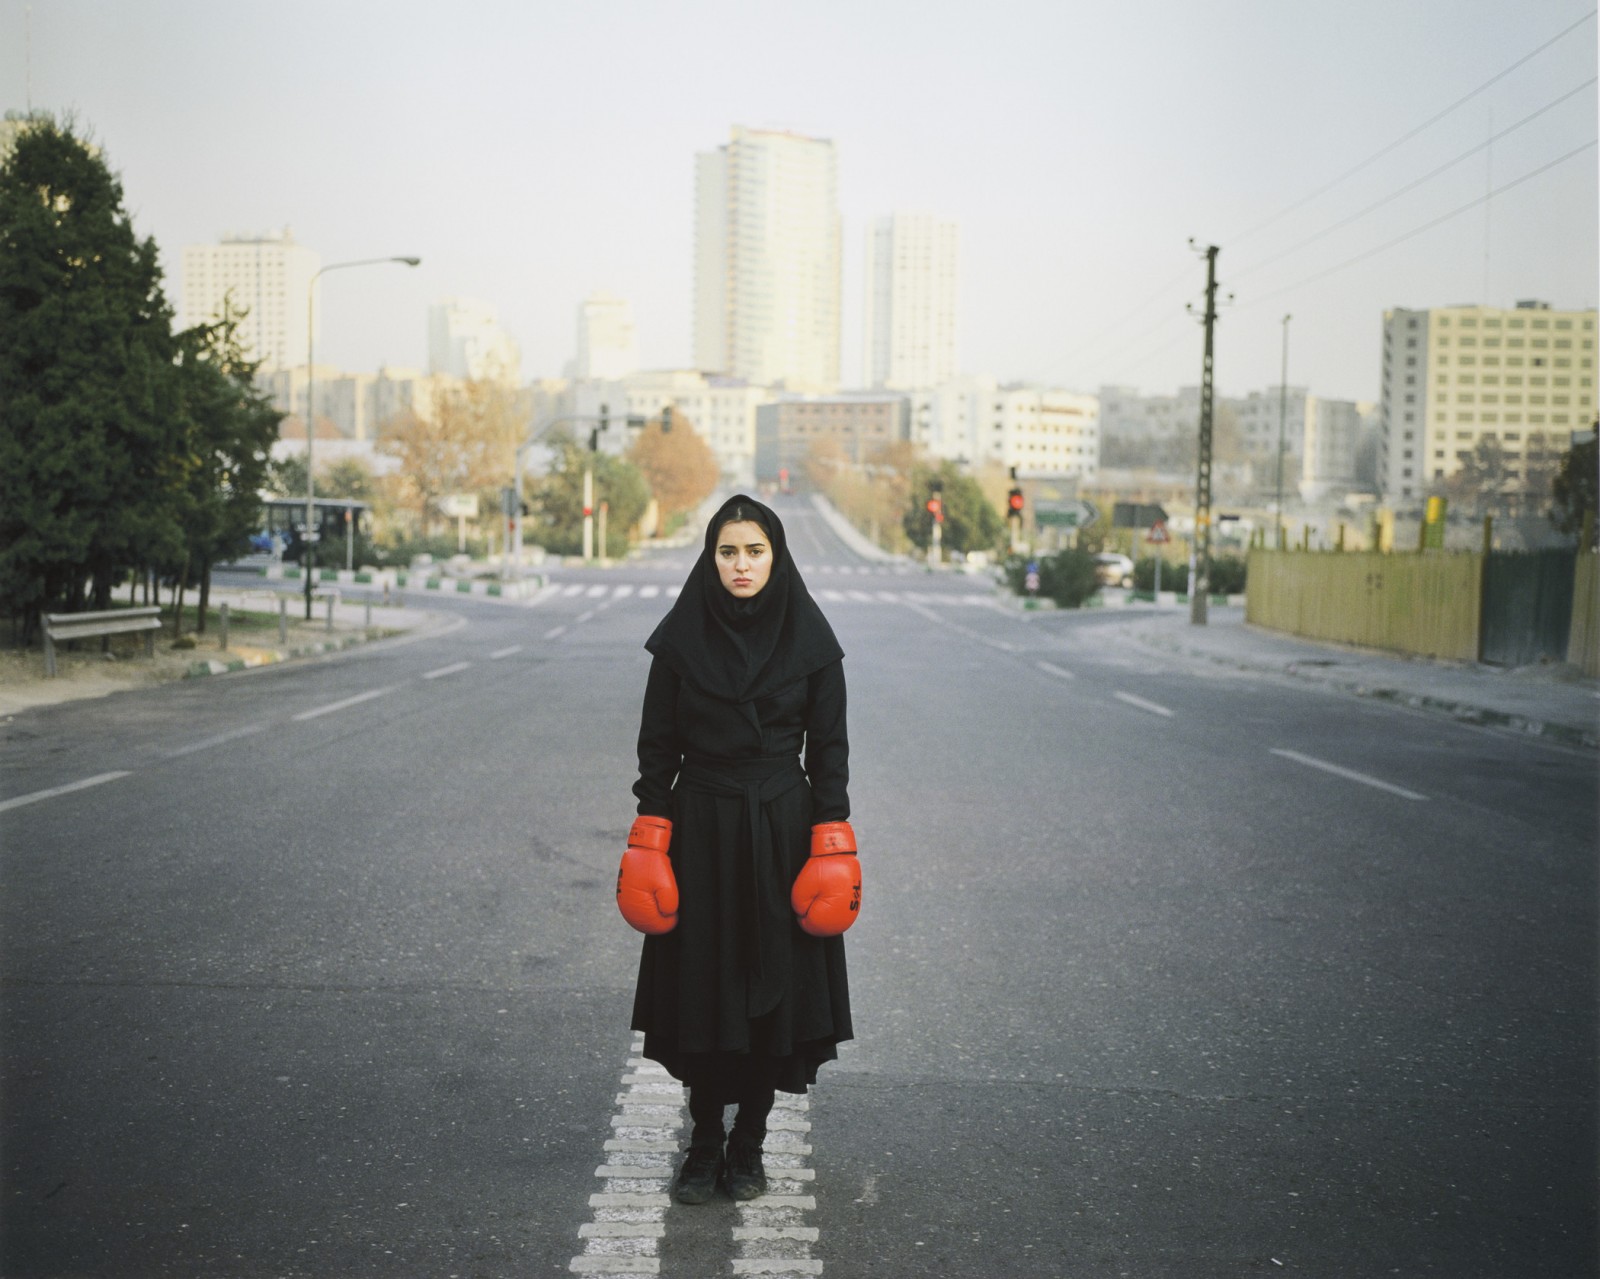 Image: Newsha Tavakolian, Untitled, from the series Listen, 2011